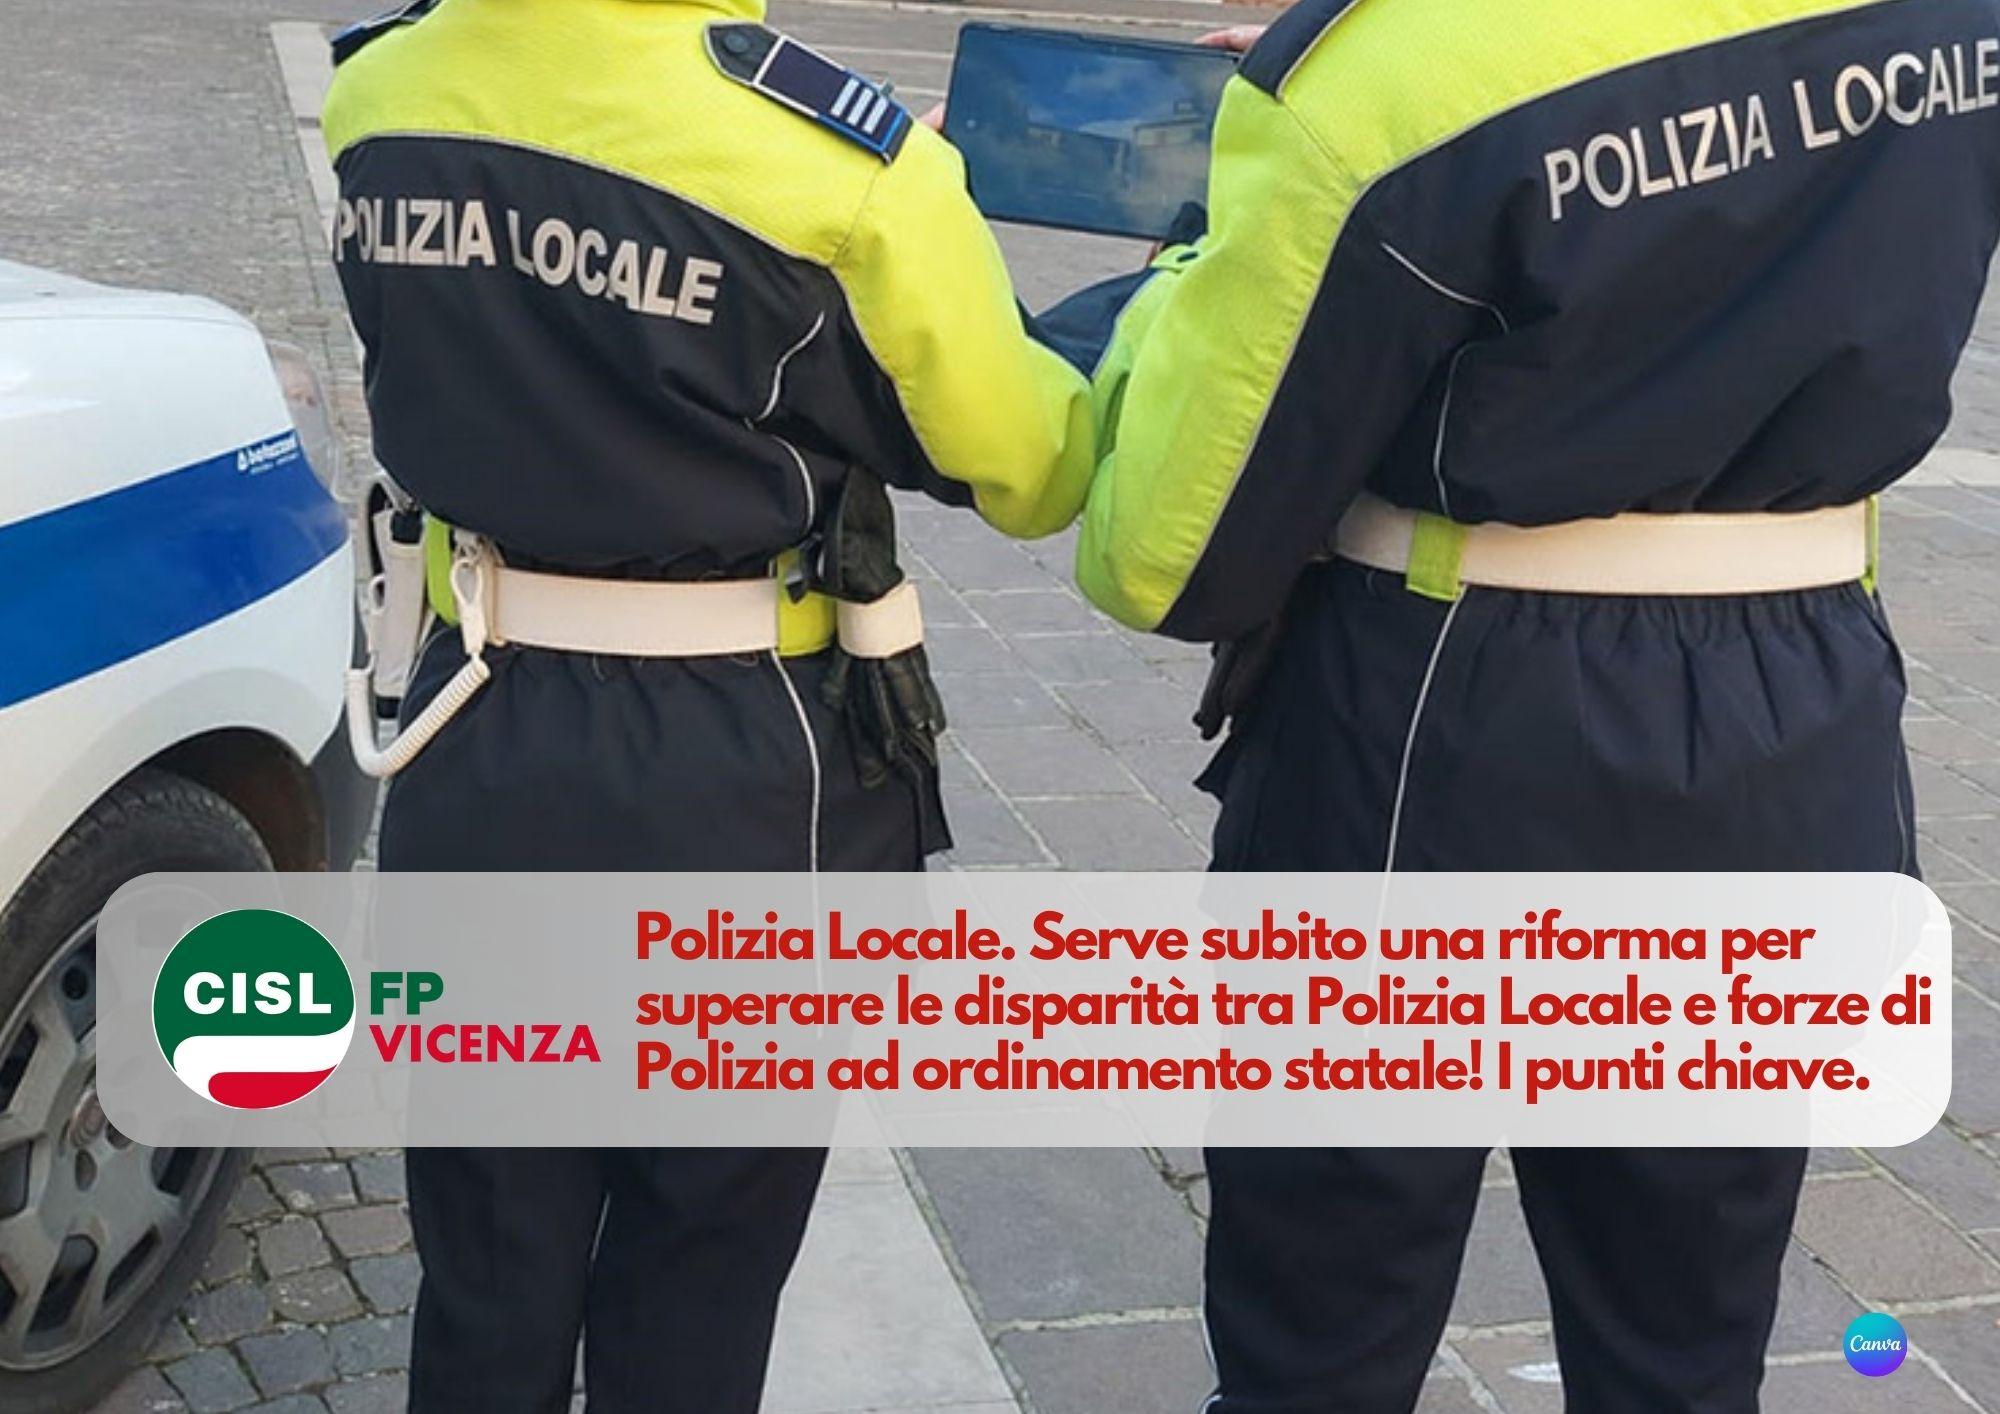 CISL FP Vicenza. Polizia Locale: serve una riforma per superare le disparità. Da fare ora!